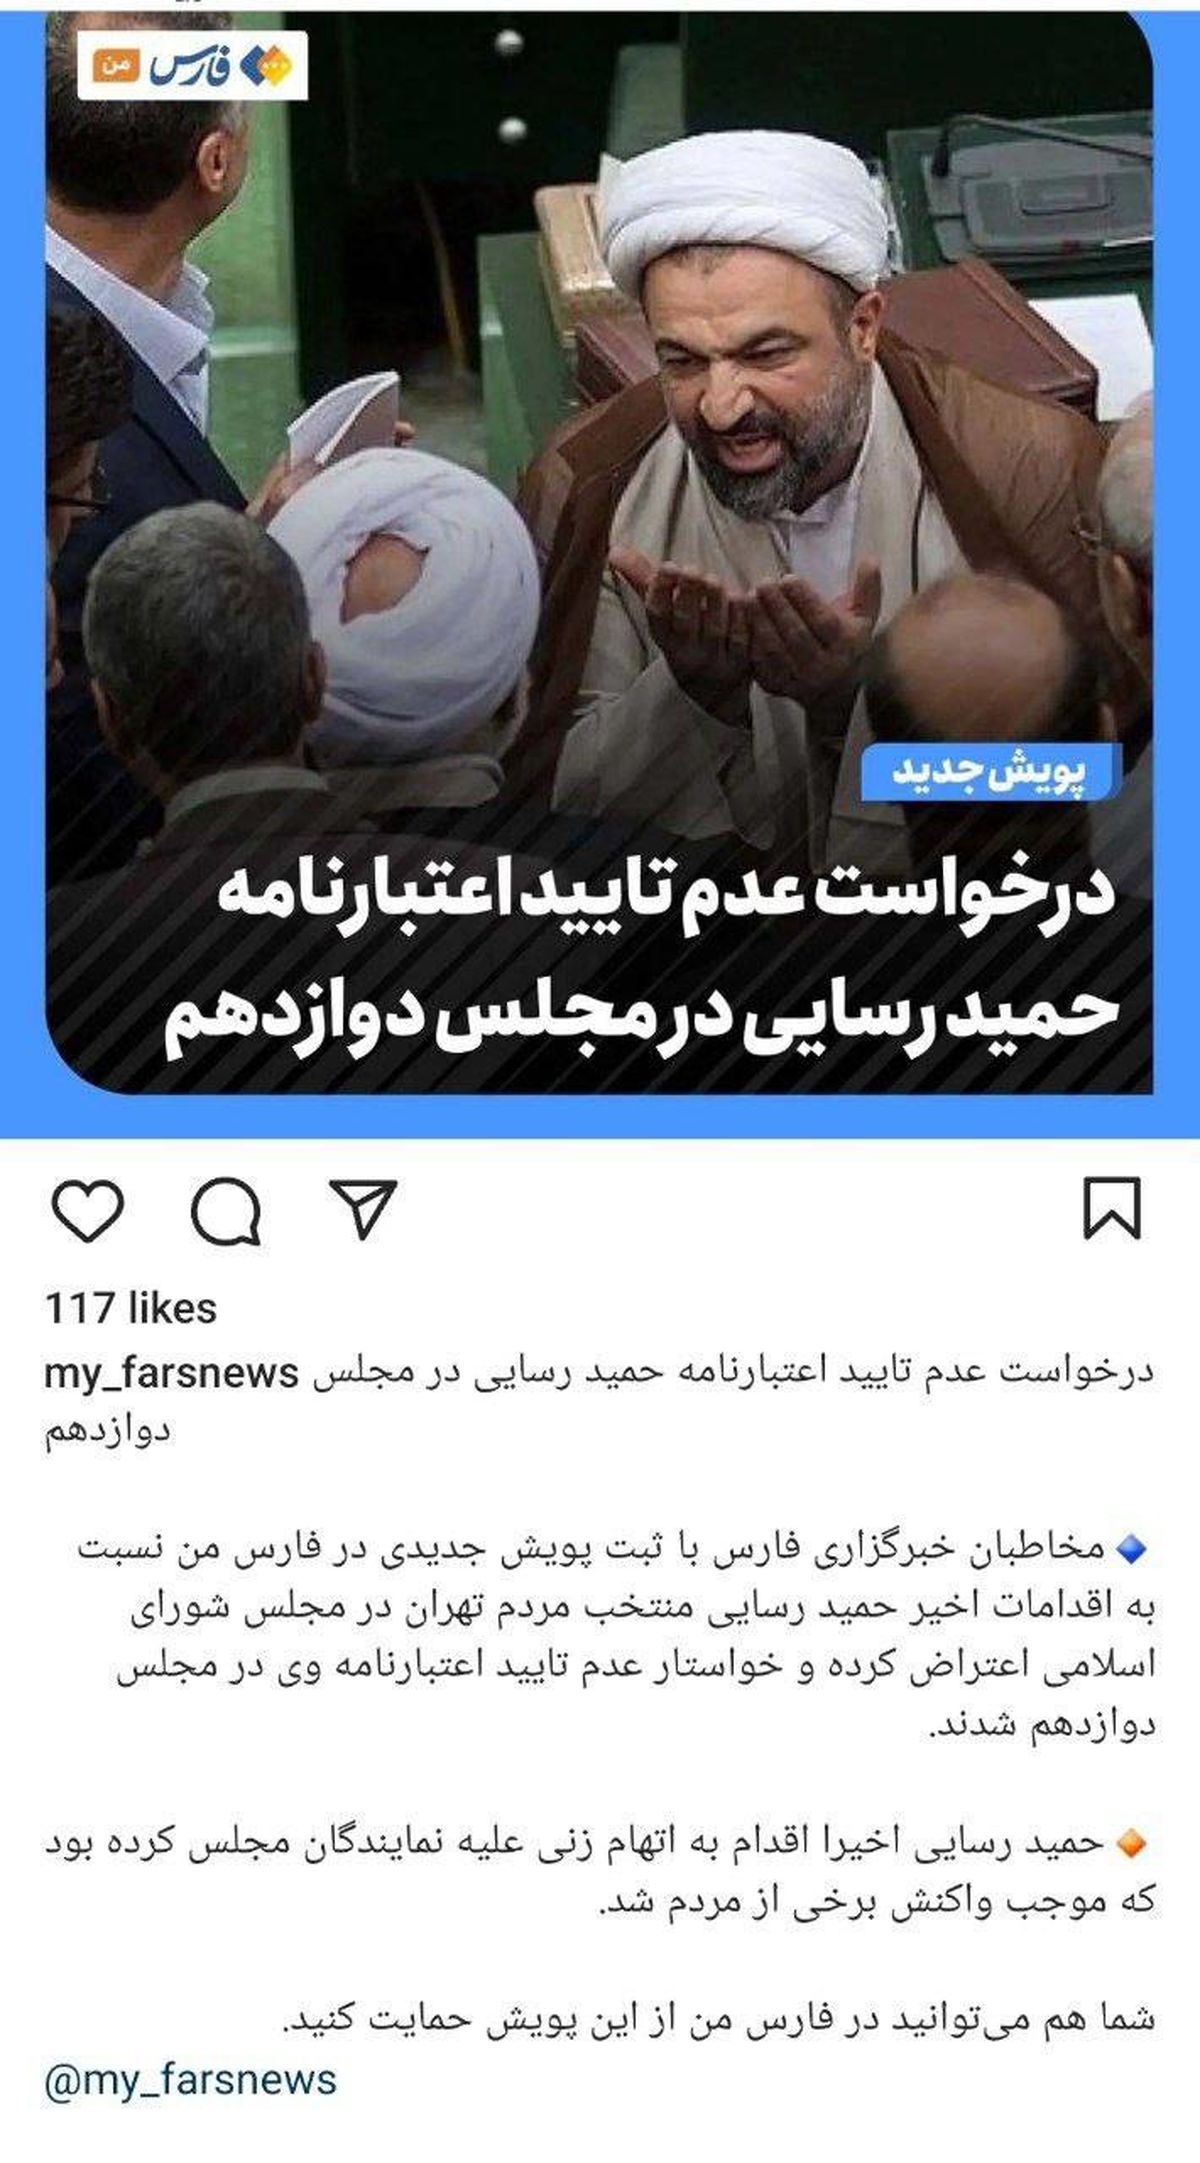 پویش جدید در خبرگزاری فارس برای رد اعتبارنامه حمید رسایی